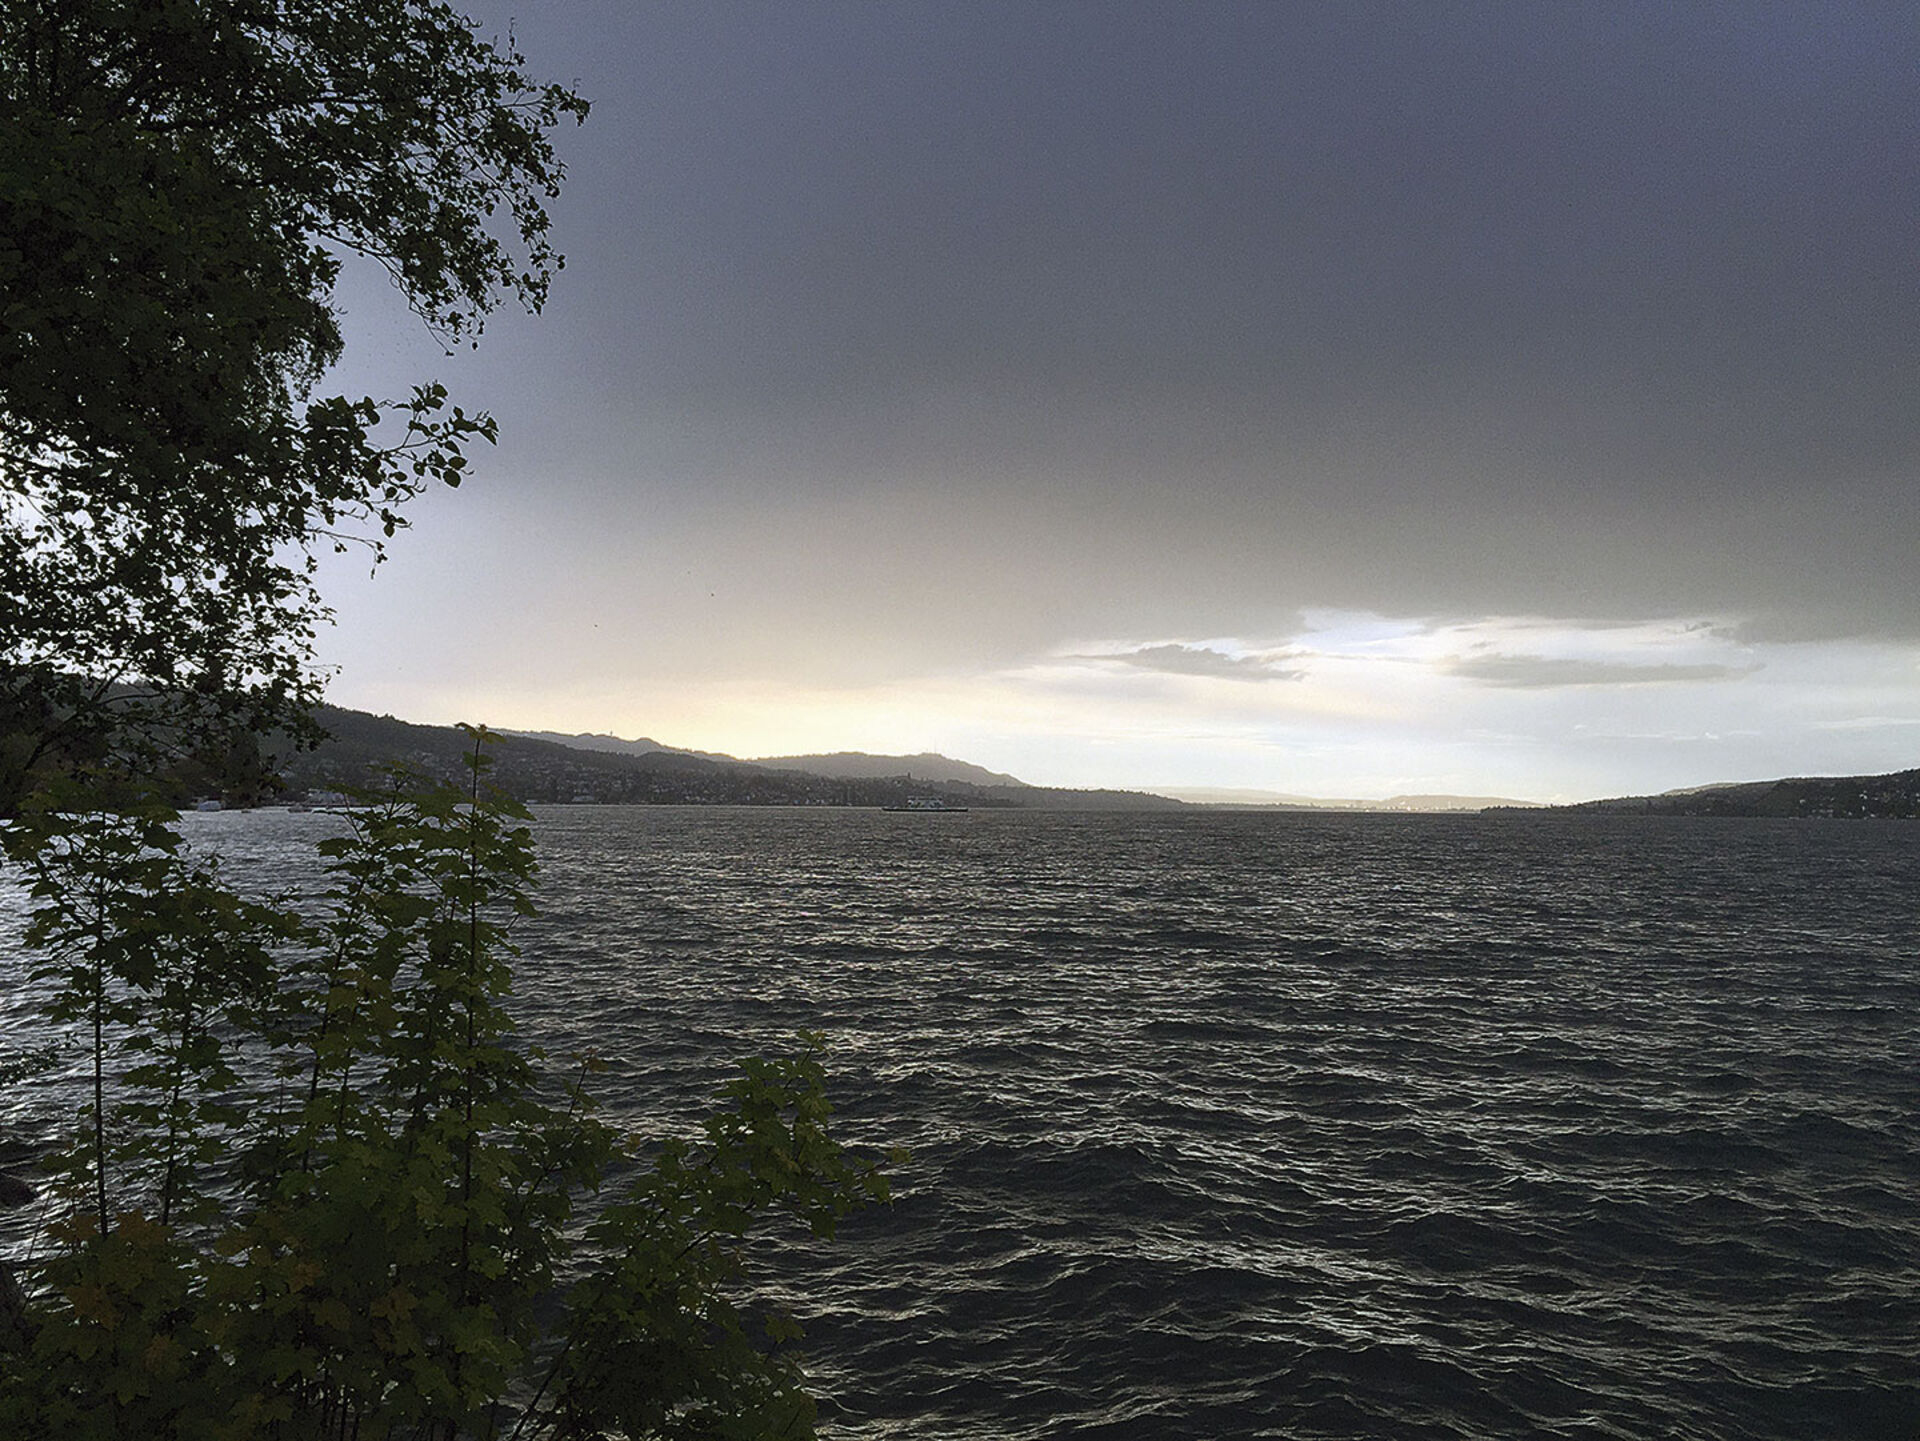  Ein Gewitter zieht auf über dem Zürichsee und zwingt uns, umzudisponieren. Statt mit dem Boot an den Bürkliplatz ins Seebecken zu fahren, müssen wir uns eine Stelle zum Uferfischen suchen.  